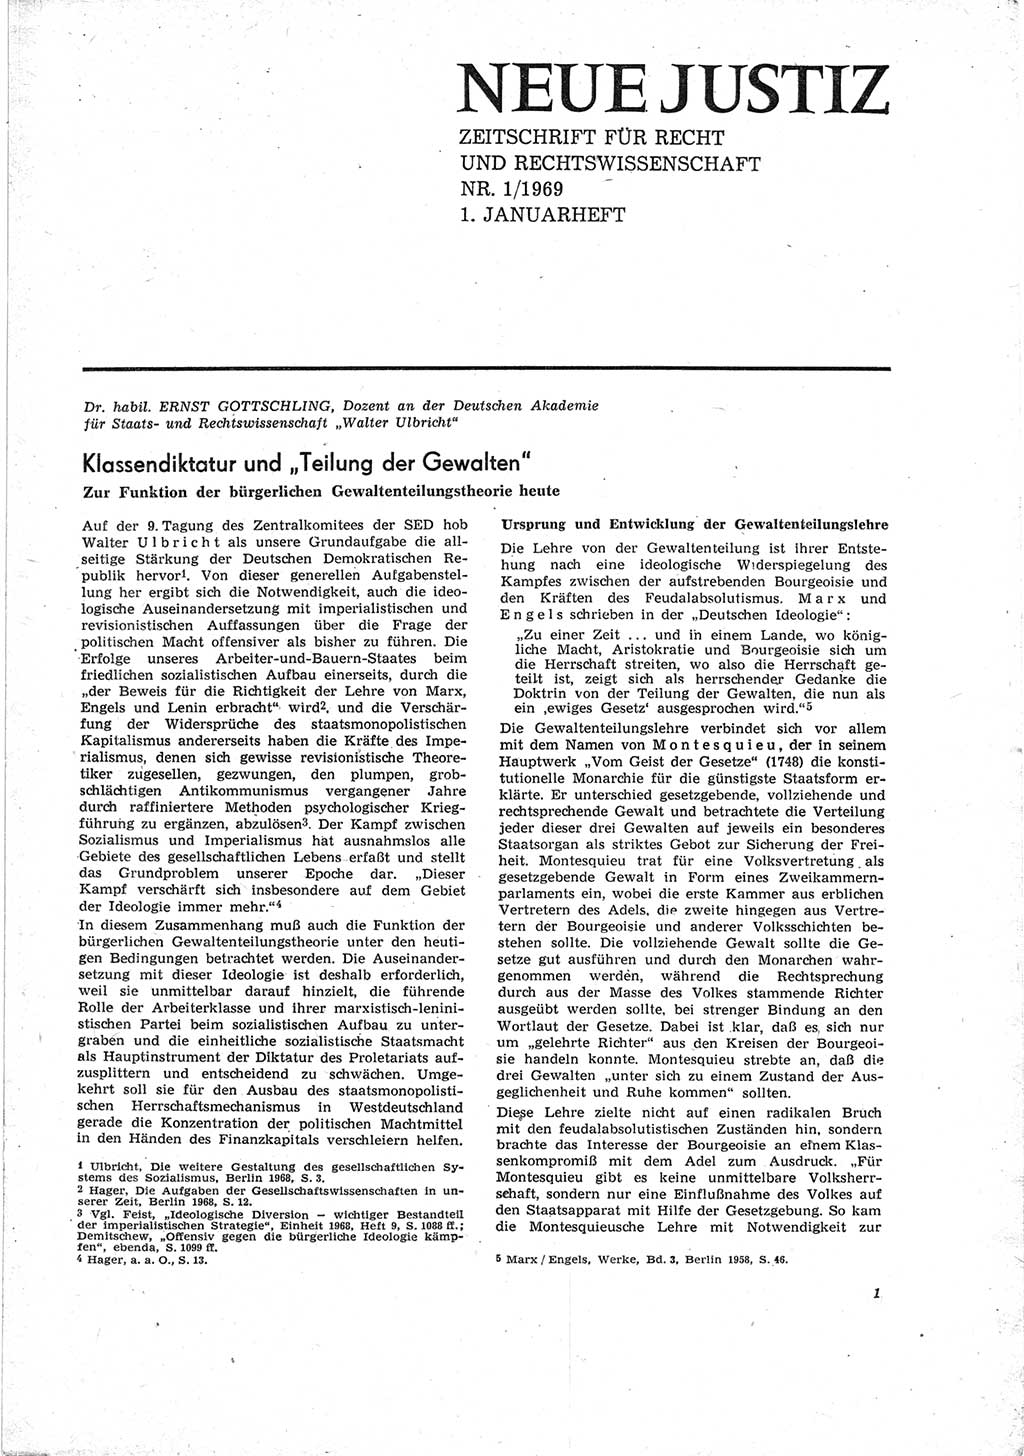 Neue Justiz (NJ), Zeitschrift für Recht und Rechtswissenschaft [Deutsche Demokratische Republik (DDR)], 23. Jahrgang 1969, Seite 1 (NJ DDR 1969, S. 1)